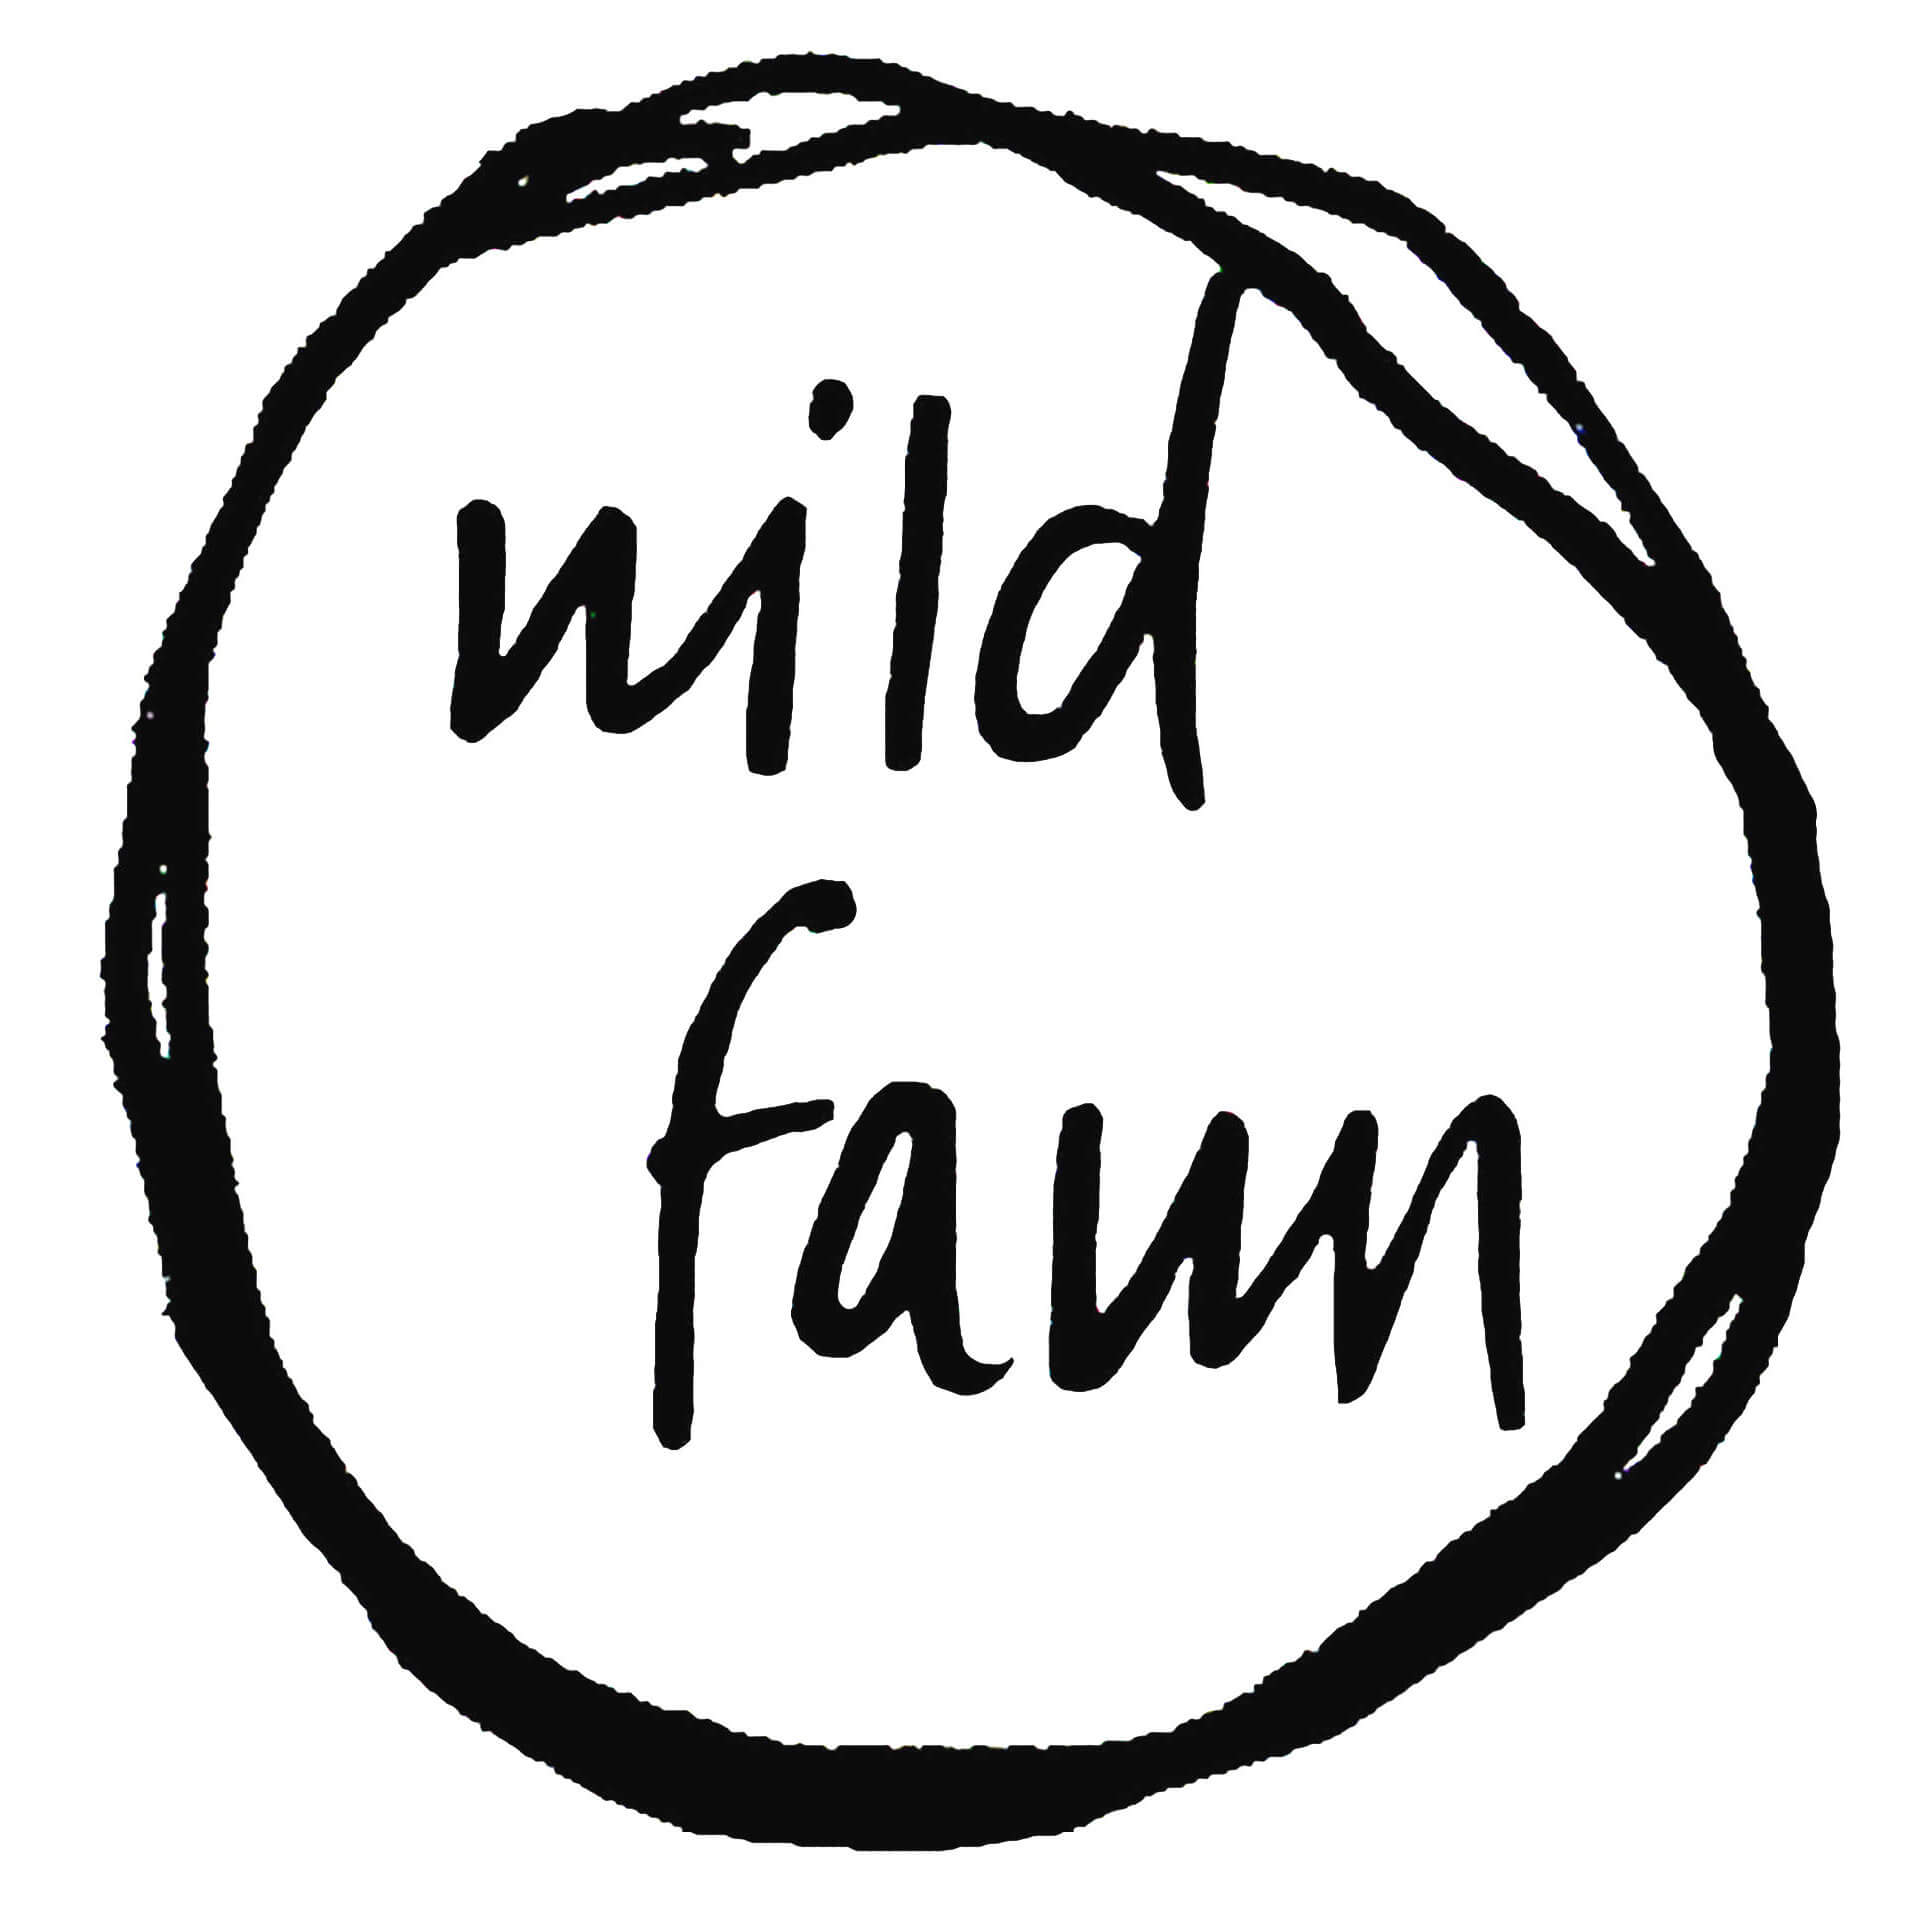 Wild Fawn